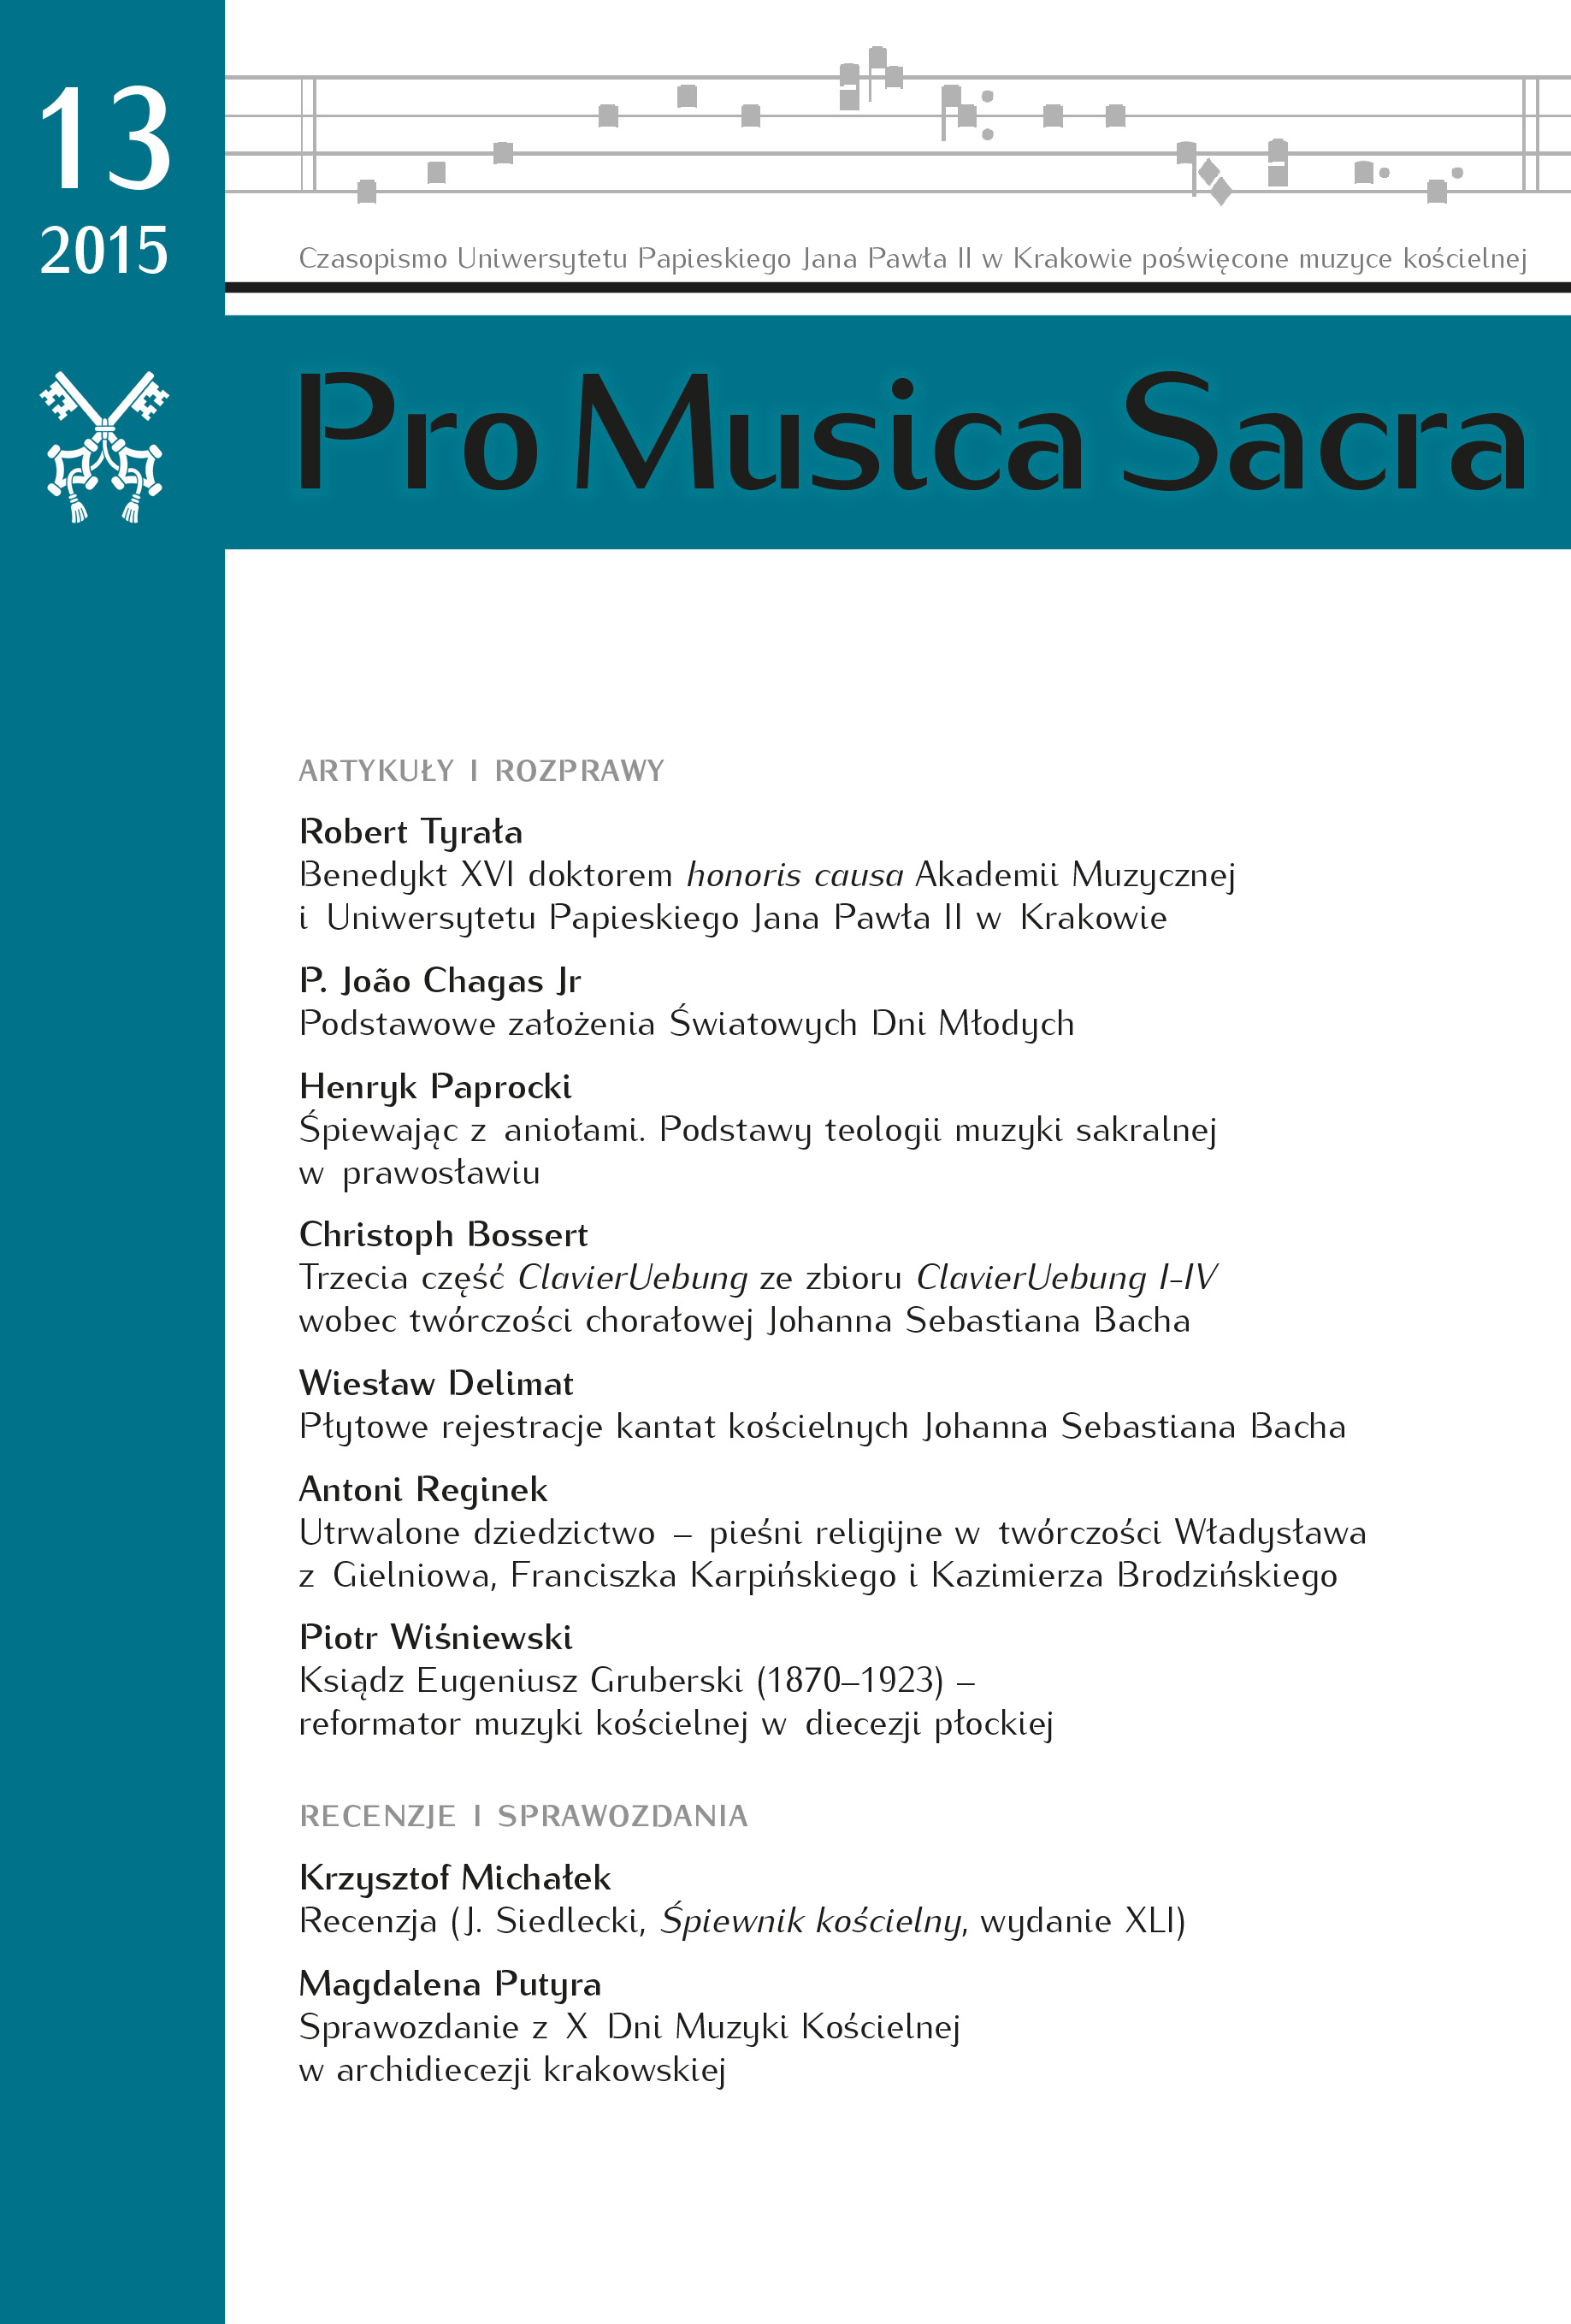 Sprawozdanie z X Dni Muzyki Kościelnej w archidiecezji krakowskiej